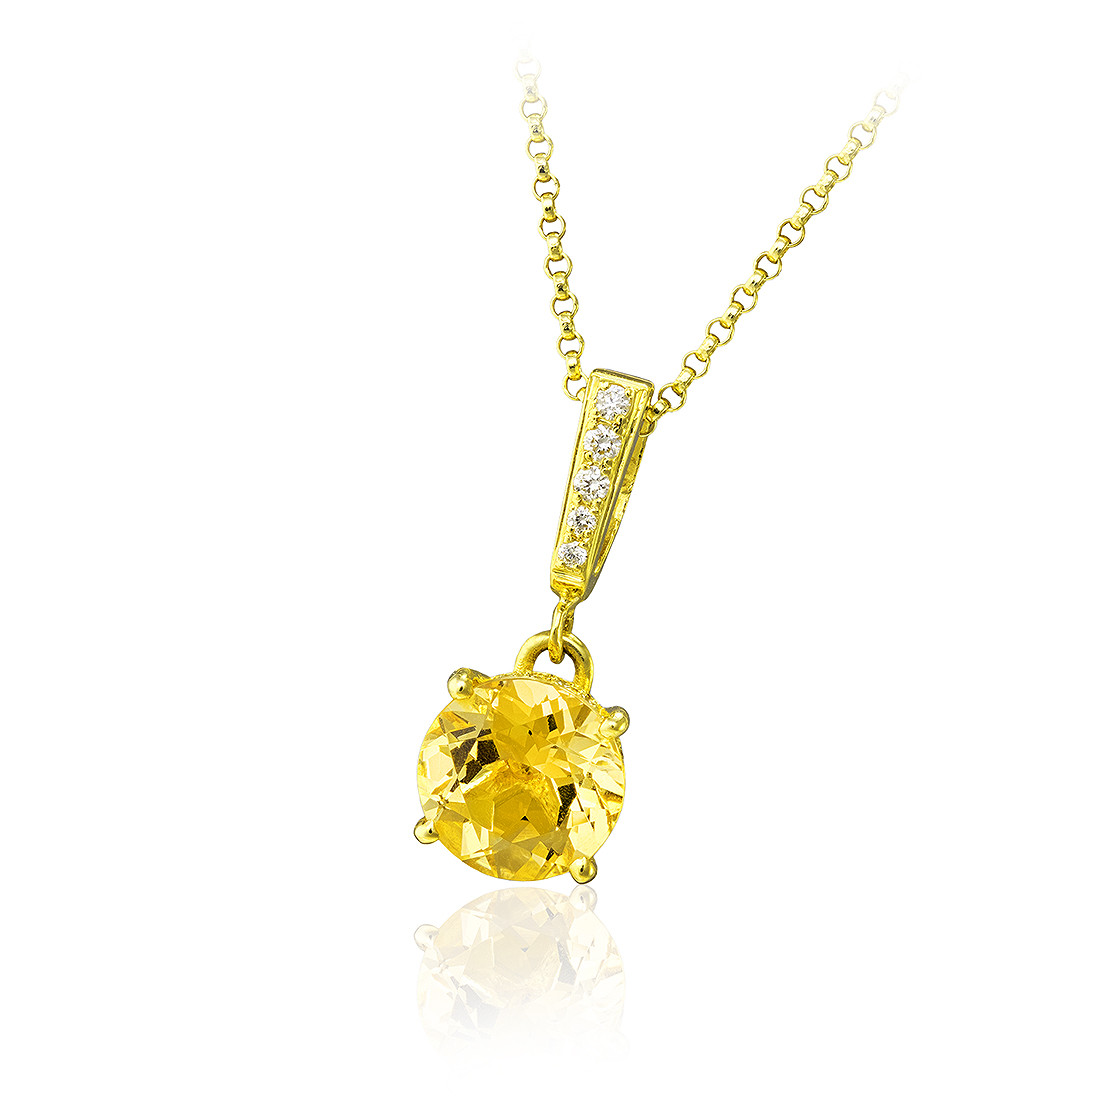 Prívesok Pellerine, žlté zlato, zlatý beryl, diamant.